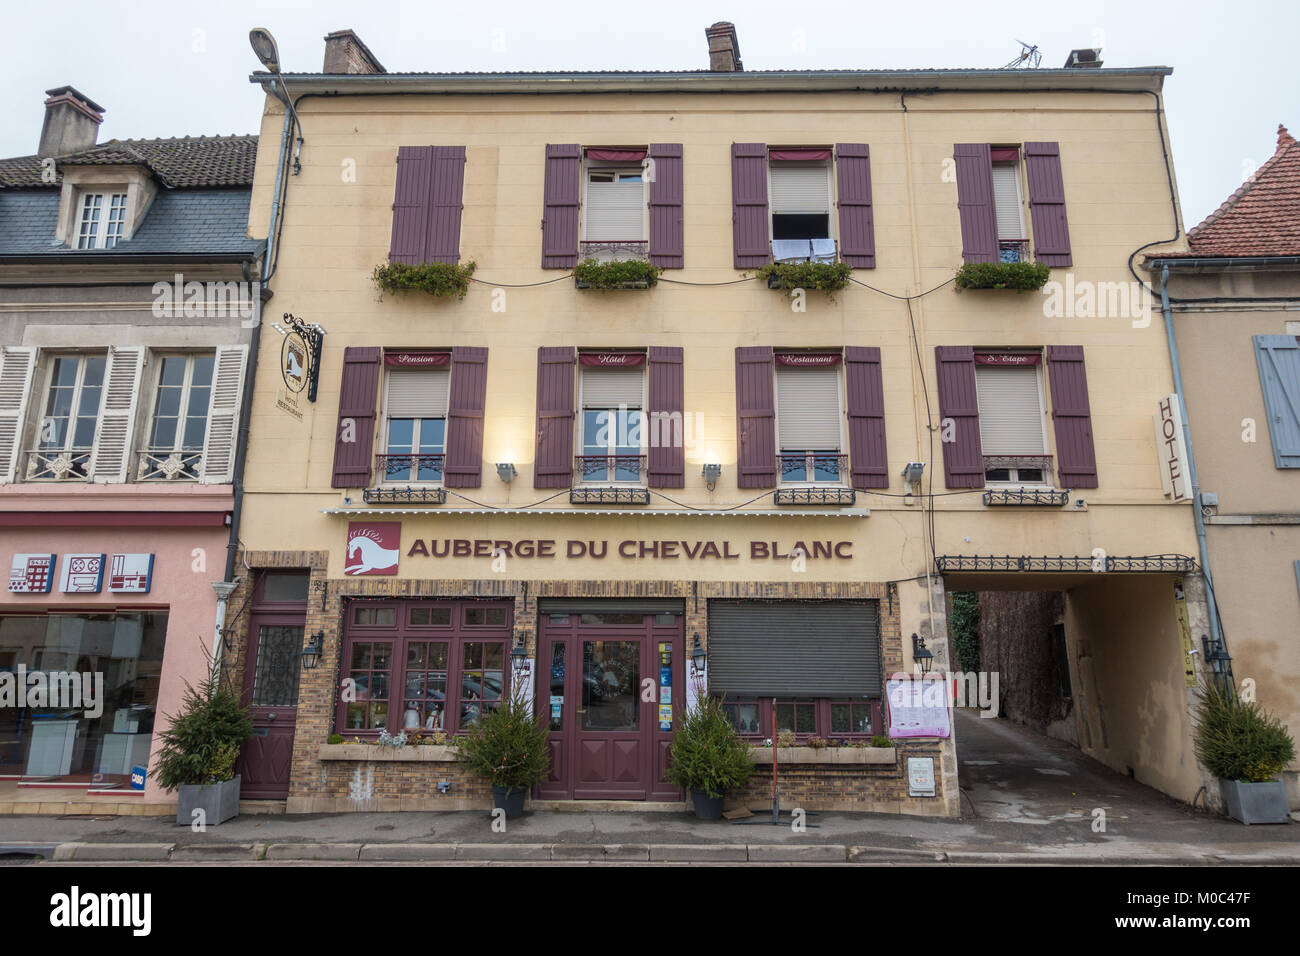 Facade of the restaurant 'Auberge du Cheval Blanc' on Rue de Lyon, Avallon, Yonne, Bourgogne, France Stock Photo